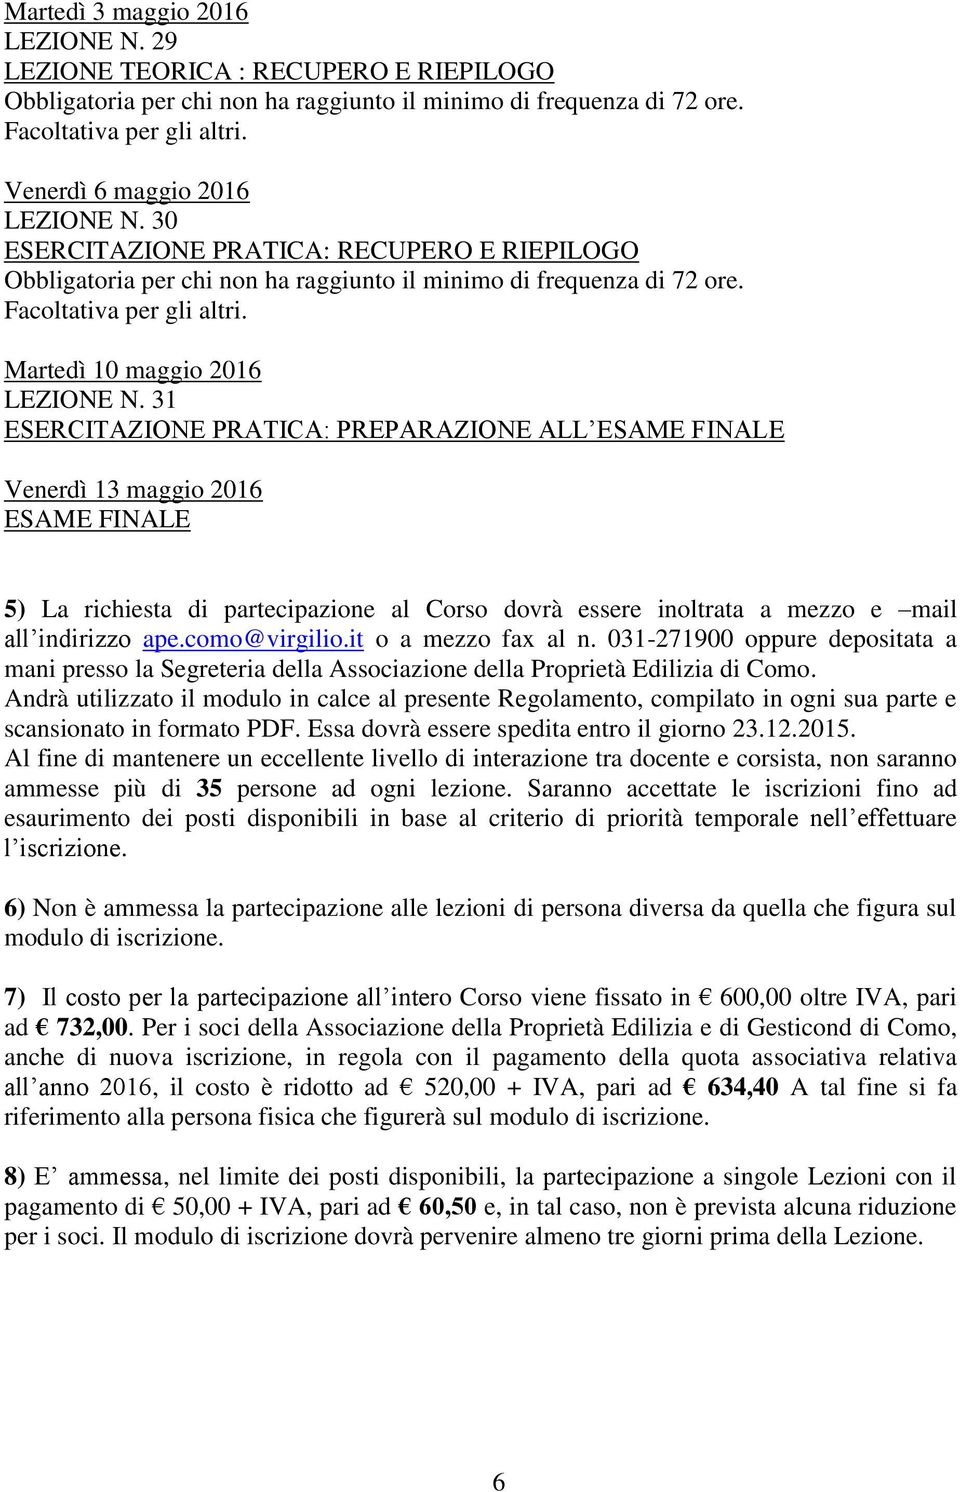 31 : PREPARAZIONE ALL ESAME FINALE Venerdì 13 maggio 2016 ESAME FINALE 5) La richiesta di partecipazione al Corso dovrà essere inoltrata a mezzo e mail all indirizzo ape.como@virgilio.